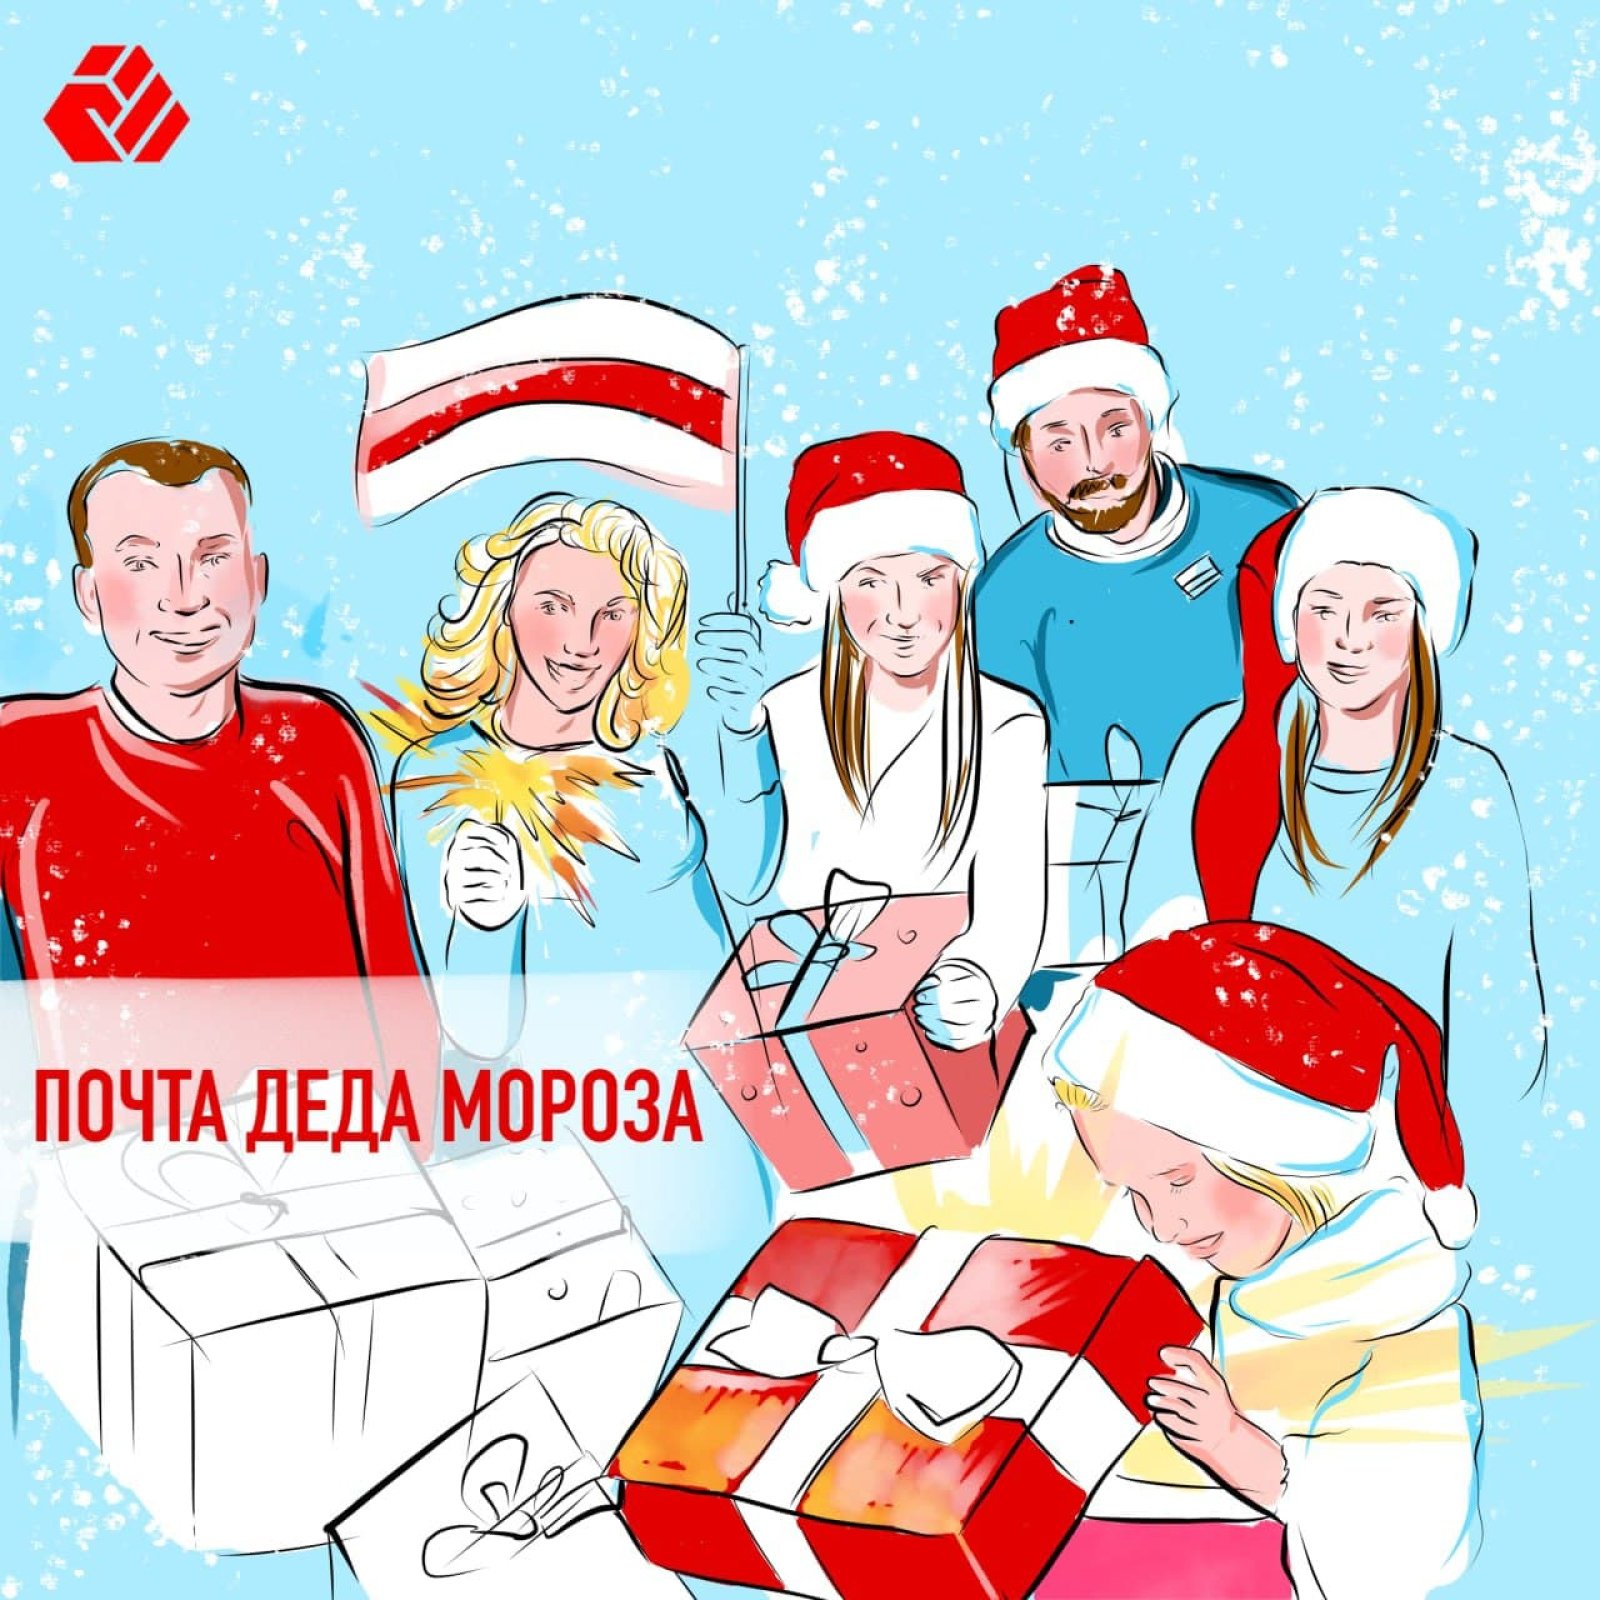 50 детей получат подарки к Новому году от беларусской диаспоры